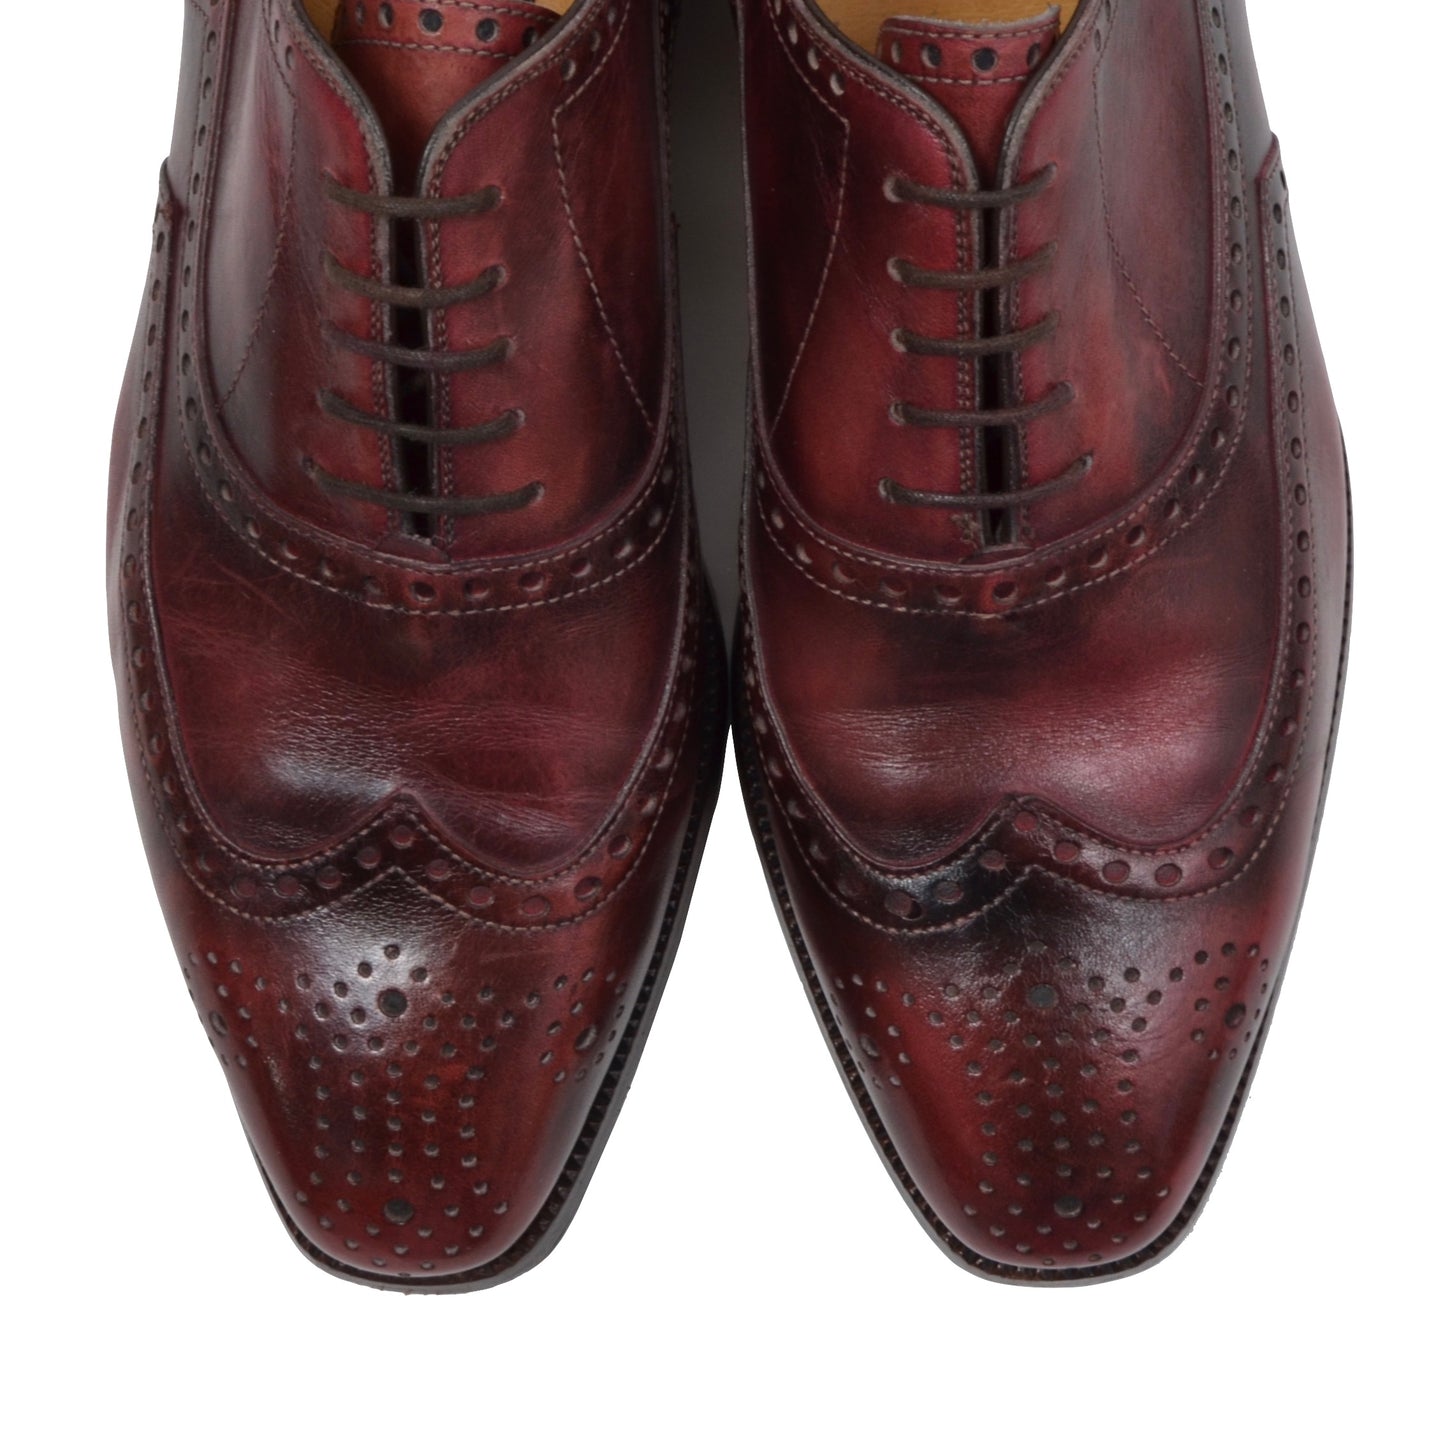 Lederer Oxford Shoes Size 41 - Burgundy